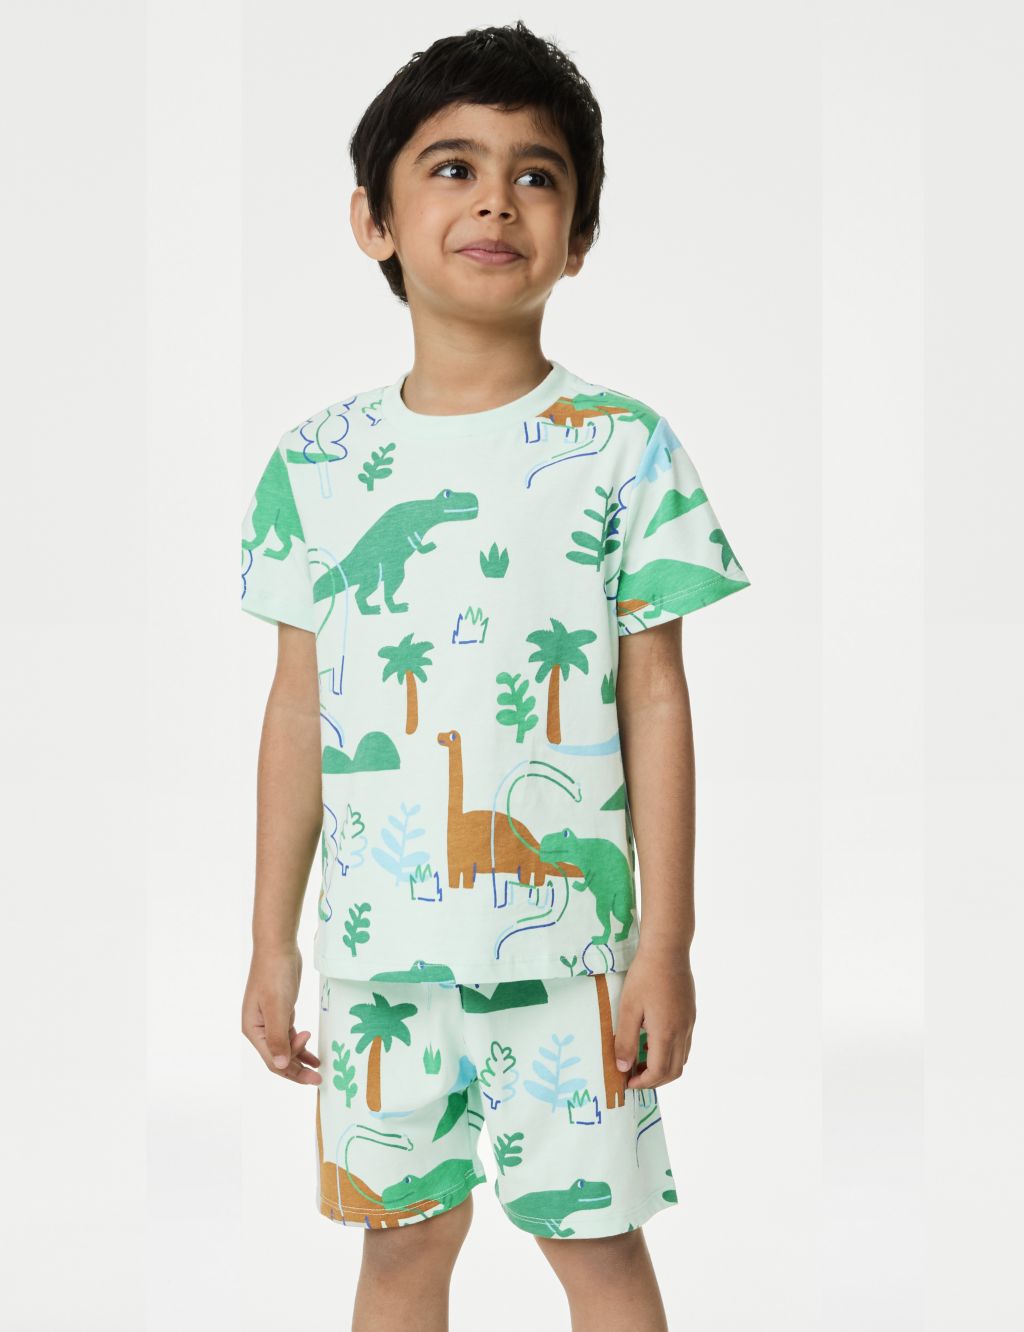 Pure Cotton Dinosaur Pyjamas (1-8 Yrs) 3 of 5